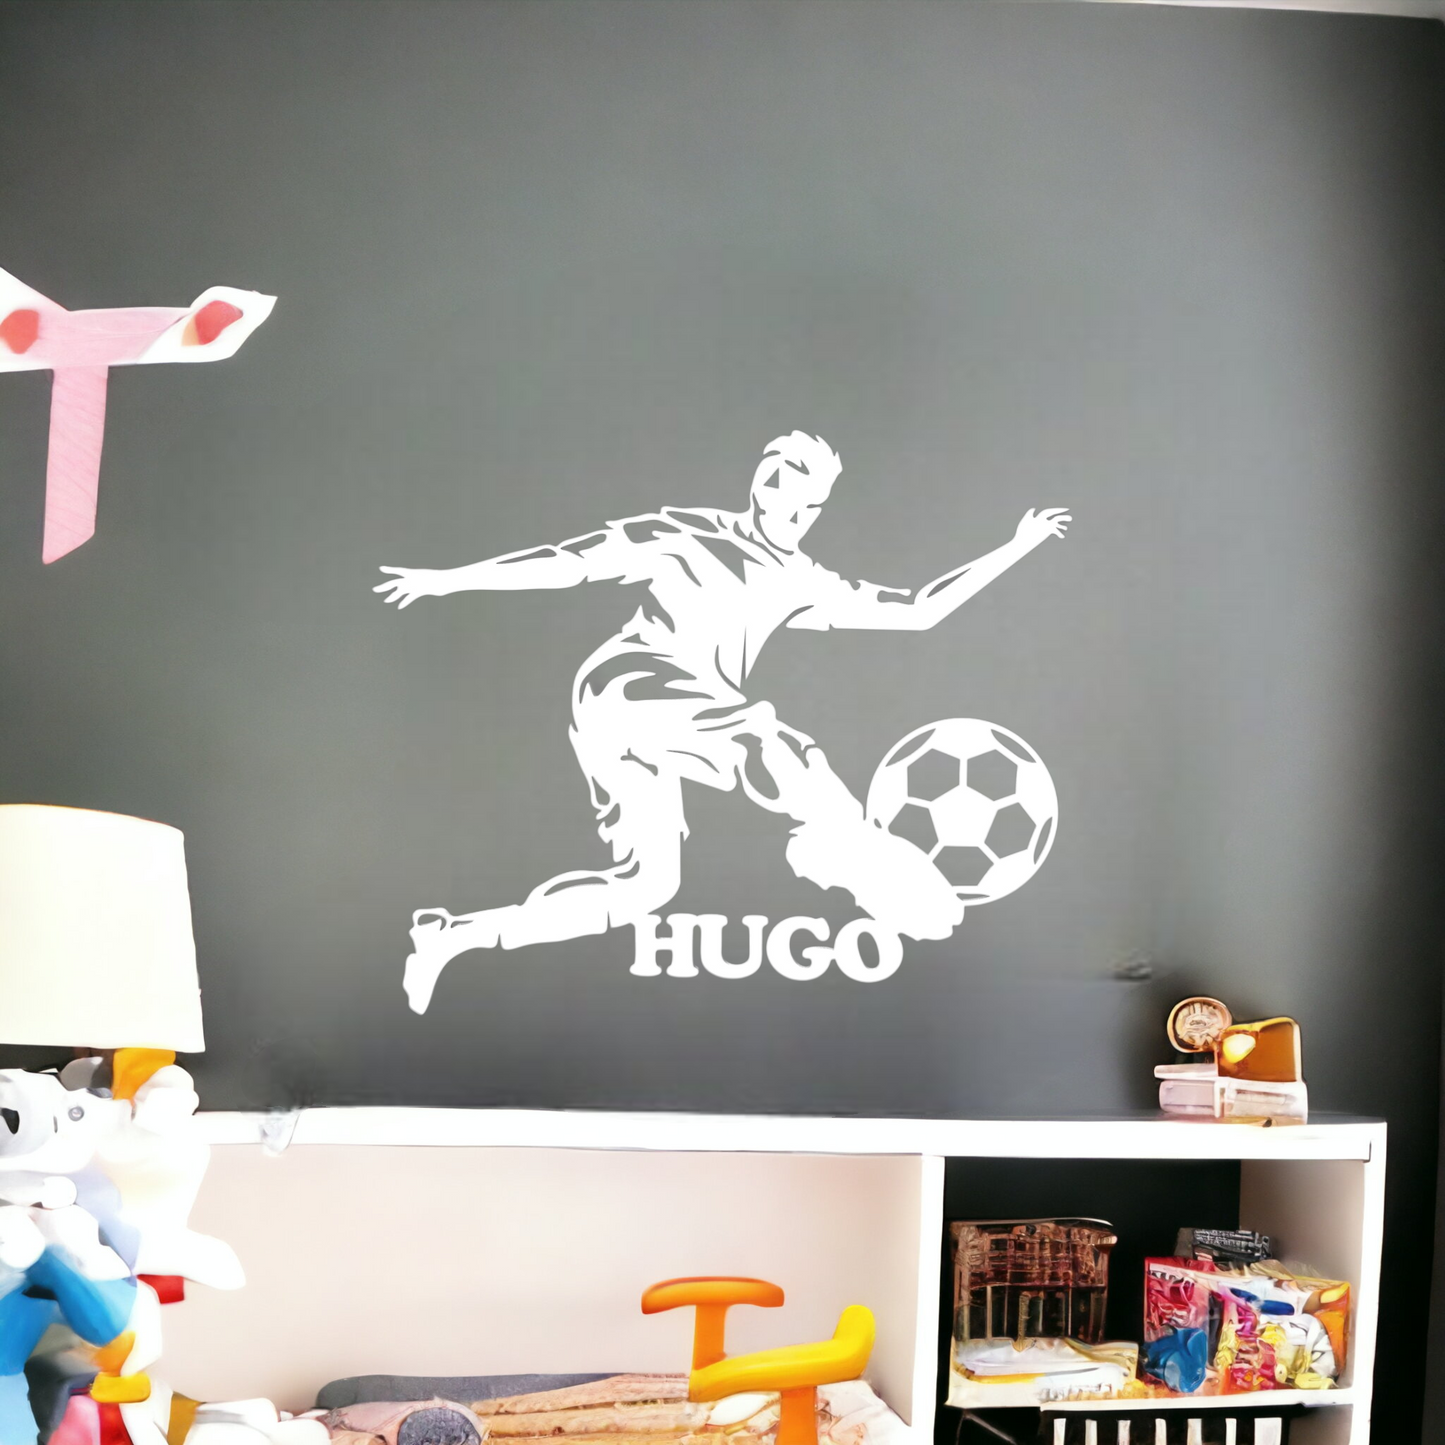 Décoration chambre enfant Personnalisée Footballeur avec Prénom